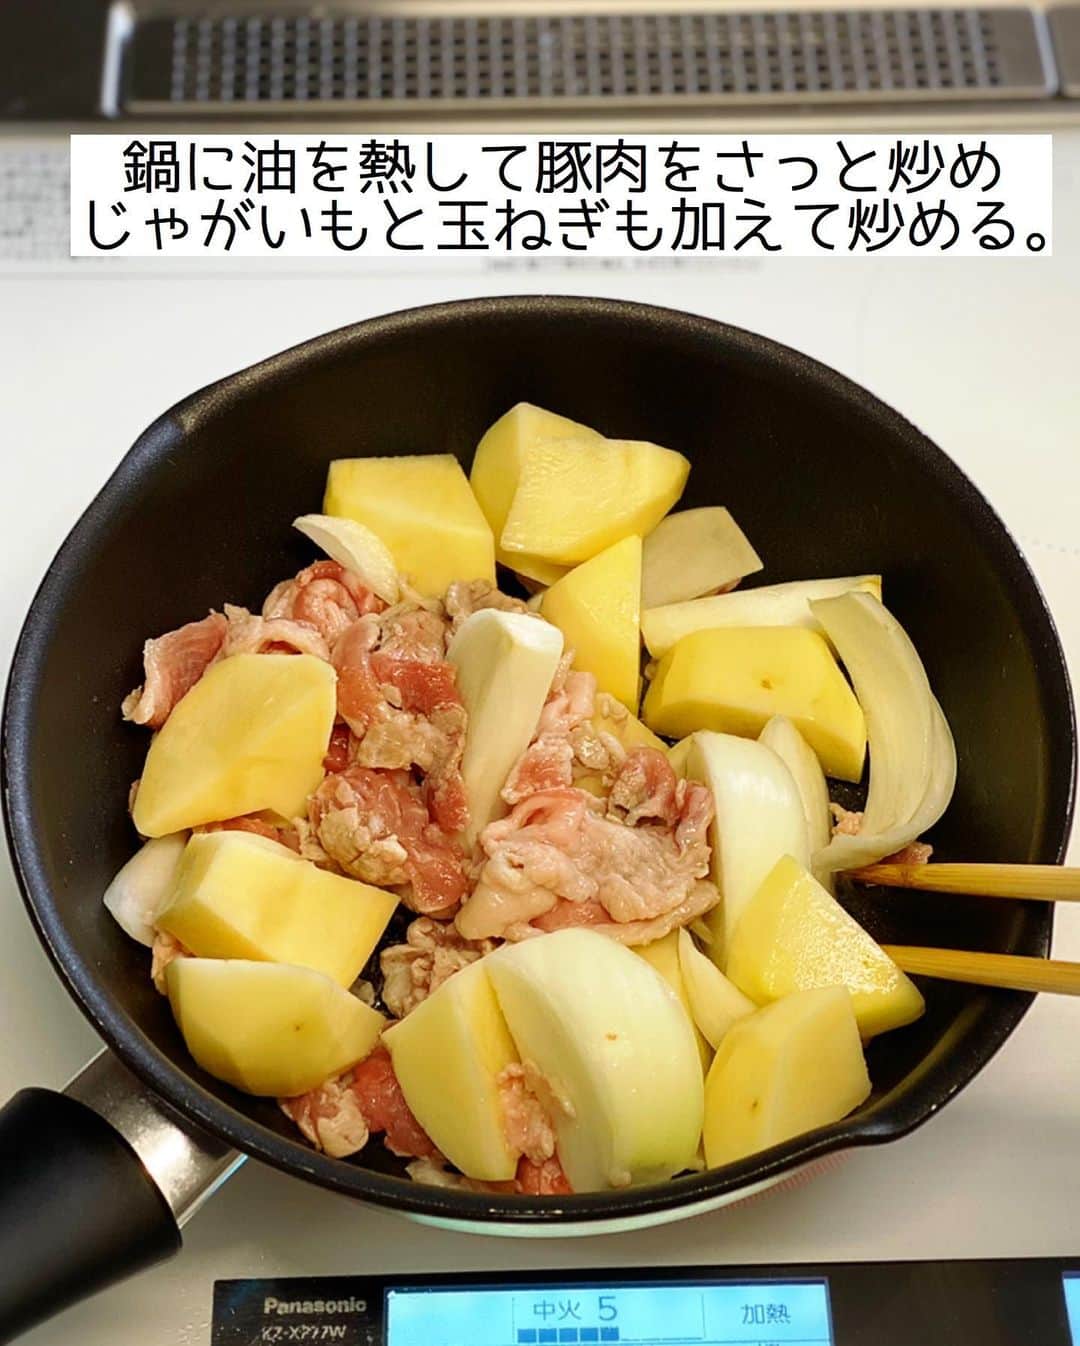 Mizuki【料理ブロガー・簡単レシピ】さんのインスタグラム写真 - (Mizuki【料理ブロガー・簡単レシピ】Instagram)「・﻿ 【#レシピ 】ーーーーーーーーーー﻿ ♡豚肉とじゃがいものとろみ煮♡﻿ (2品献立提案あり)﻿ ーーーーーーーーーーーーーーーー﻿ ﻿ ﻿ ﻿ おはようございます(*^^*)﻿ ﻿ 今日ご紹介させていただくのは﻿ \豚肉とじゃがいものとろみ煮/﻿ ﻿ お手軽な豚こまと﻿ ごろっと大振りなじゃがいもで﻿ コスパ&食べ応え十分♡﻿ あっさりコクのあるうま塩味で﻿ あと引くおいしさですよ〜(*´艸`)﻿ ﻿ とろっとろの餡は冷めにくく﻿ これからの季節におすすめです♩﻿ よかったらお試し下さいね(*^^*)﻿ ﻿ ﻿ ﻿ ＿＿＿＿＿＿＿＿＿＿＿＿＿＿＿＿＿＿＿＿﻿ 【2〜3人分】﻿ 豚こま切れ肉...180g﻿ じゃがいも...2個(300g)﻿ 玉ねぎ...1/2個﻿ 片栗粉...大1﻿ サラダ油...小1﻿ ●水...400ml﻿ ●酒・みりん...各大2﻿ ●鶏がらスープ...小2﻿ ●塩...小1/2﻿ 粗挽き黒こしょう...適量﻿ ﻿ 1.じゃがいもは4cm大に切る。玉ねぎは2cm幅のくし形に切る。片栗粉は水大2(分量外)で溶いて水溶き片栗粉を作る。﻿ 2.鍋にサラダ油を中火で熱して豚肉をさっと炒める。続けてじゃがいもと玉ねぎも加えて更に炒める。﻿ 3.玉ねぎが透き通ってきたら●を加え、アルミホイルの落とし蓋をのせ、弱めの中火で12〜15分煮る。(途中2回混ぜる)﻿ 4.じゃがいもが柔らかくなったら水溶き片栗粉を加え、手早く混ぜてとろみをつける。仕上げに粗挽き黒こしょうを振る。﻿ ￣￣￣￣￣￣￣￣￣￣￣￣￣￣￣￣￣￣￣￣﻿ ﻿ ﻿ ﻿ 《ポイント》﻿ ♦︎直径20cmくらいの鍋を使用しています♩﻿ ♦︎煮込み時間は目安です☆じゃがいもが柔らかくなればOK♩﻿ ♦︎水溶き片栗粉を加えたら、ヘラで手早く混ぜて下さい♩﻿ ﻿ ﻿ ﻿ ﻿ ﻿ ﻿ ﻿ ＿＿＿＿＿＿＿＿＿＿＿＿＿＿＿＿﻿ 🥣🥣🥣 2品献立提案 🥣🥣🥣﻿ ￣￣￣￣￣￣￣￣￣￣￣￣￣￣￣￣﻿ 【合間に作れるおすすめ副菜】﻿ >ツナとれんこんの和風和え(P.100)﻿ >ピーマンとじゃこの甘辛和え(P.33)﻿ (#Mizukiの2品献立 より)﻿ ﻿ 【献立の段取り】﻿ メインを煮ている間に﻿ 副菜をレンチンして仕上げる🥢﻿ ￣￣￣￣￣￣￣￣￣￣￣￣￣￣￣￣￣﻿ ﻿ ﻿ ﻿ ﻿ ﻿ ﻿ ⭐️発売中⭐️3刷重版が決まりました😭﻿ 本当にありがとうございます(涙)﻿ _____________________________________﻿ \15分でいただきます/﻿ 📕#Mizukiの2品献立 📕﻿ (9月24日発売・マガジンハウス)﻿ ￣￣￣￣￣￣￣￣￣￣￣￣￣￣￣￣￣﻿ ﻿ 忙しい私たちには﻿ 2品くらいがちょうどいい！﻿ 『しんどくない献立、考えました』﻿ ￣￣￣￣￣￣￣￣￣￣￣￣￣￣￣￣﻿ ﻿ ーーーーーPART.1 ーーーーー﻿ 【Mizukiのお墨つき！２品献立ベスト10】﻿ 約15分でできる10献立をご紹介！﻿ メインは全部フライパン、副菜はレンチンor混ぜるだけ♡﻿ ﻿ ーーーーーPART.2 ーーーーー﻿ 【フライパンひとつ！今夜のメインおかず】﻿ 献立の主役になる肉や魚のおかず50品！﻿ Part3の副菜と組み合わせれば﻿ 献立のバリエーションが広がりますよ♩﻿ ﻿ ーーーーー PART.3 ーーーーー﻿ 【合間に作れる！ 野菜別かんたん副菜】﻿ レンチンor和えるだけの副菜レシピを﻿ 素材別にたっぷり収録♩﻿ ﻿ ーーーーー番外編ーーーーー﻿ 【ひとつで満足！ご飯＆麺】﻿ 【具だくさん！おかずスープ】﻿ 【オーブンいらずのおやつレシピ】﻿ ￣￣￣￣￣￣￣￣￣￣￣￣￣￣￣￣￣￣﻿ (ハイライトにリンク🔗あります💗)﻿ ﻿ ﻿ ﻿ ﻿ ＿＿＿＿＿＿＿＿＿＿＿＿＿＿＿＿＿＿﻿ レシピを作って下さった際や﻿ レシピ本についてのご投稿には﻿ タグ付け( @mizuki_31cafe )して﻿ お知らせいただけると嬉しいです😊💕﻿ ￣￣￣￣￣￣￣￣￣￣￣￣￣￣￣￣￣￣﻿ ﻿ ﻿ ﻿ ﻿ #豚肉#じゃがいも#とろみ煮#塩Mizuki#簡単レシピ#時短レシピ#節約レシピ#料理#フーディーテーブル#マカロニメイト#おうちごはん#デリスタグラマー#料理好きな人と繋がりたい#食べ物#料理記録#おうちごはんlover#写真好きな人と繋がりたい#foodpic#cooking#recipe#lin_stagrammer#foodporn#yummy#f52grams#豚肉とじゃがいものとろみ煮m」11月15日 8時43分 - mizuki_31cafe